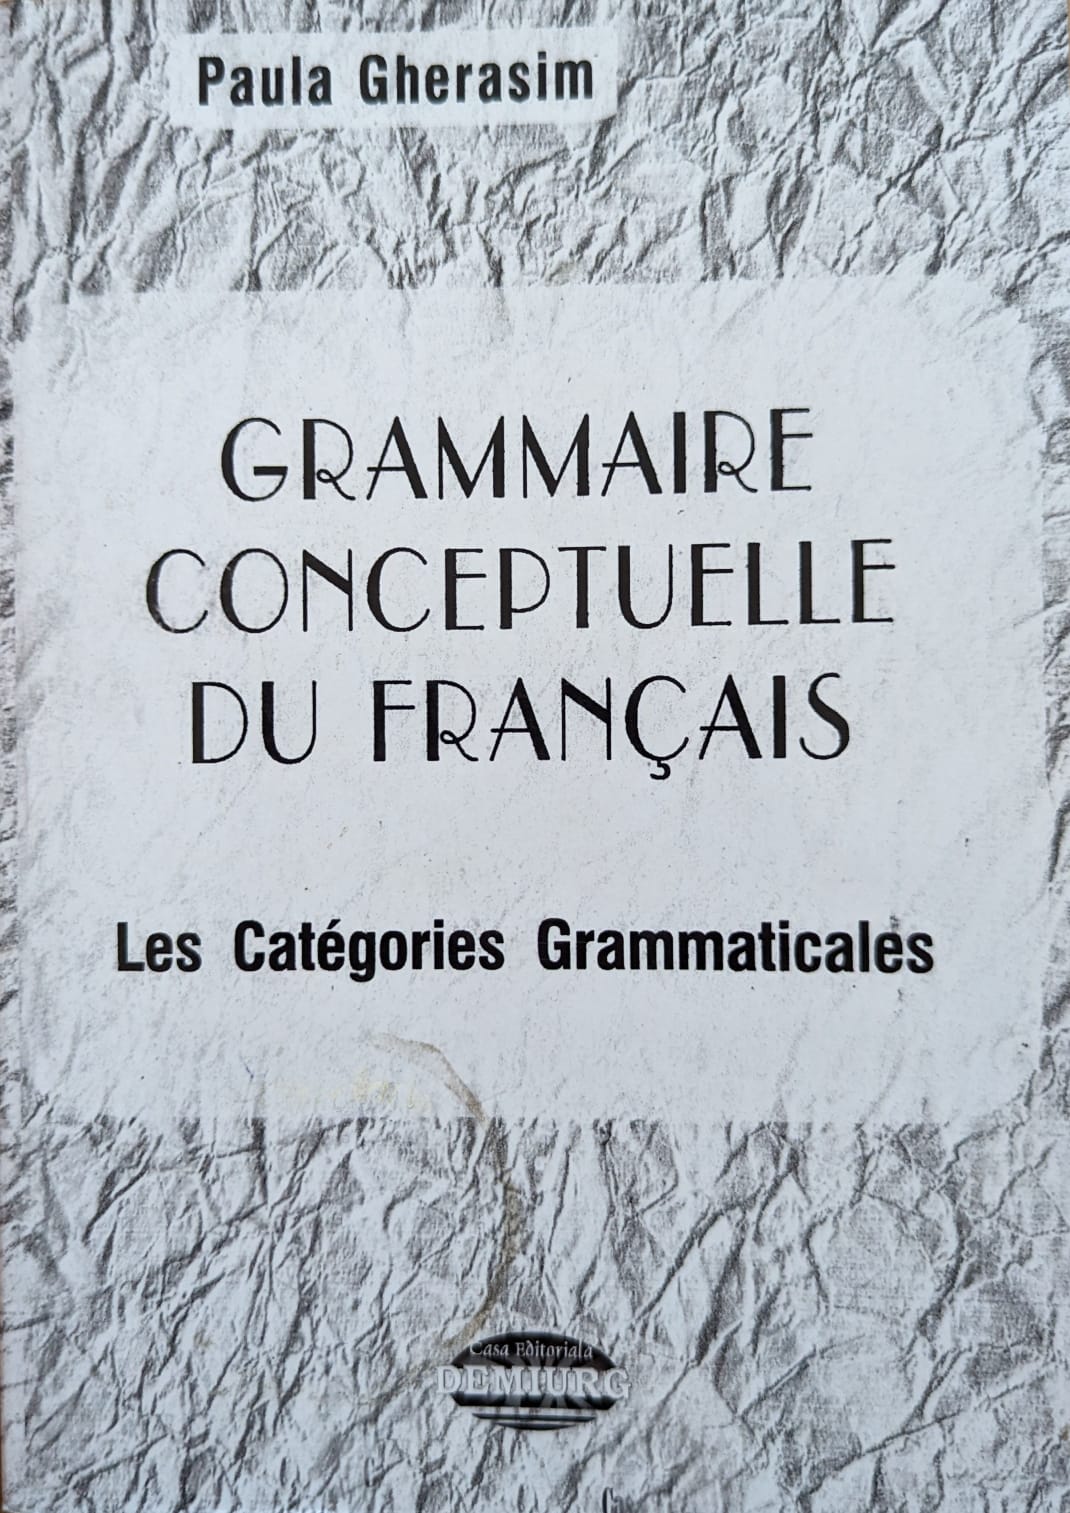 grammaire conceptuelle du francais                                                                   paula gherasim                                                                                      